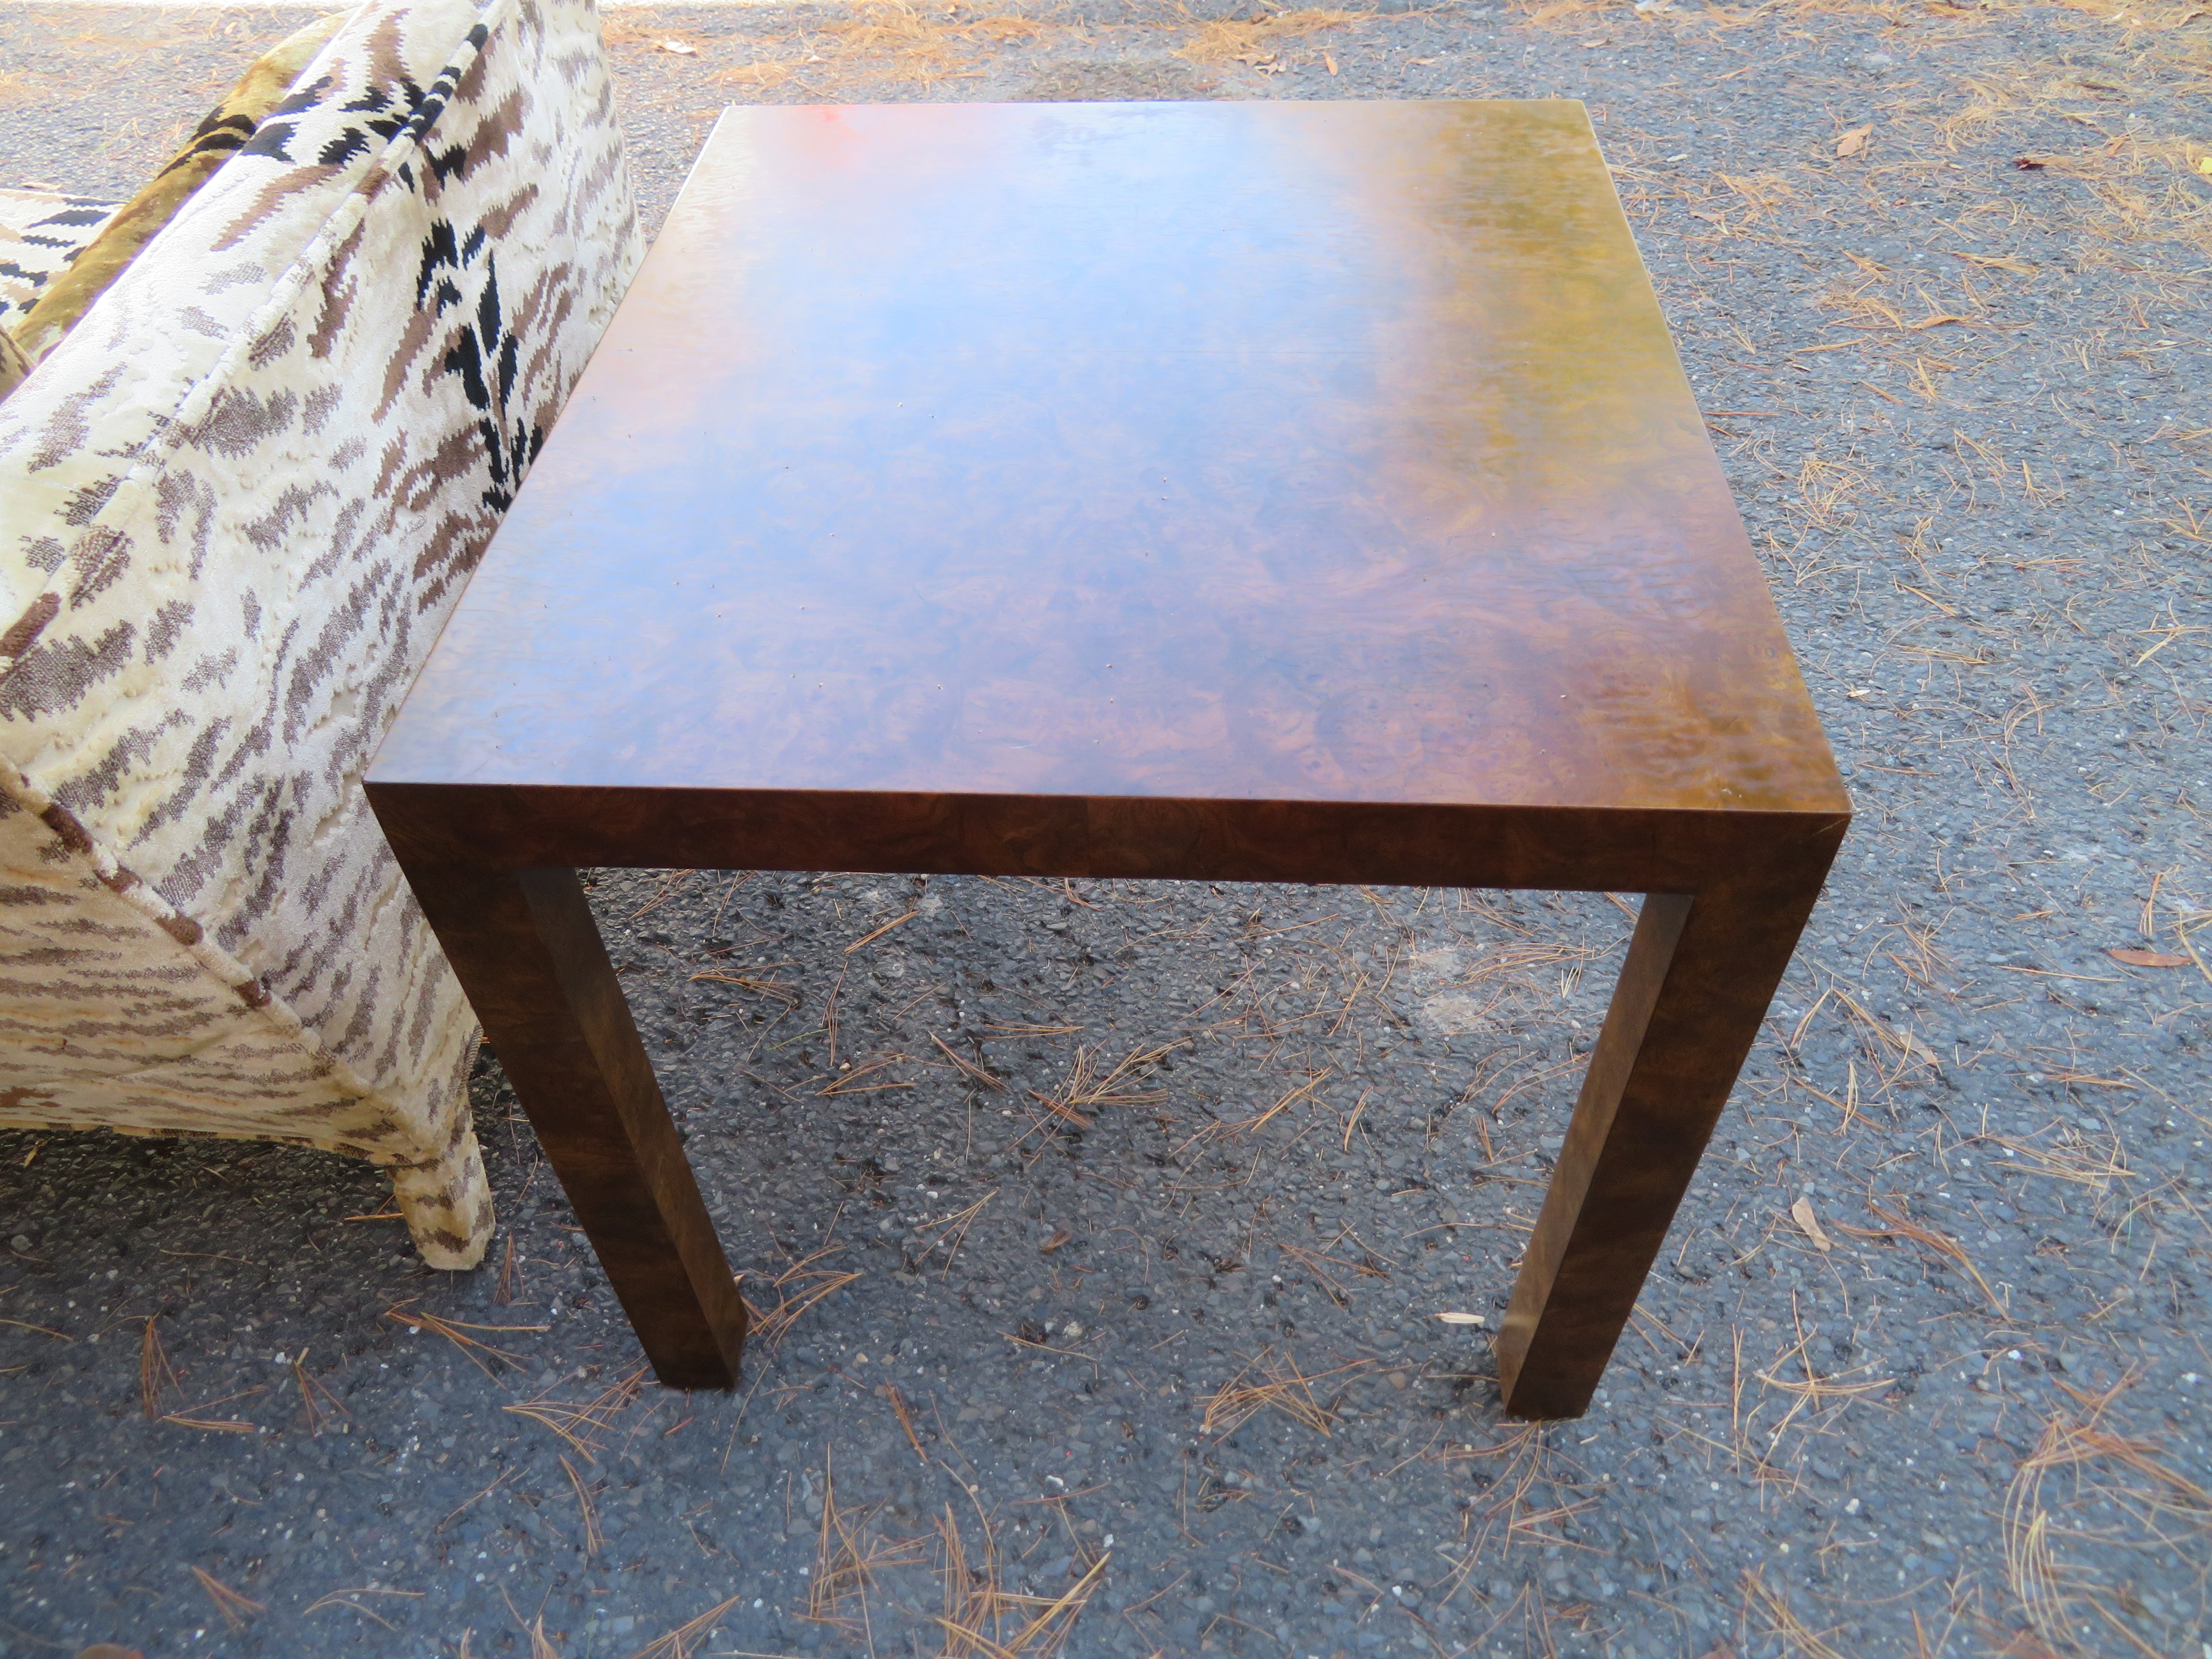 Table d'appoint Parsons en ronce de bois, style Milo Baughman, moderne du milieu du siècle dernier. La table présente un aspect carré avec un magnifique placage en ronce de noyer profond. Nous adorons utiliser ces tables à côté de nos canapés